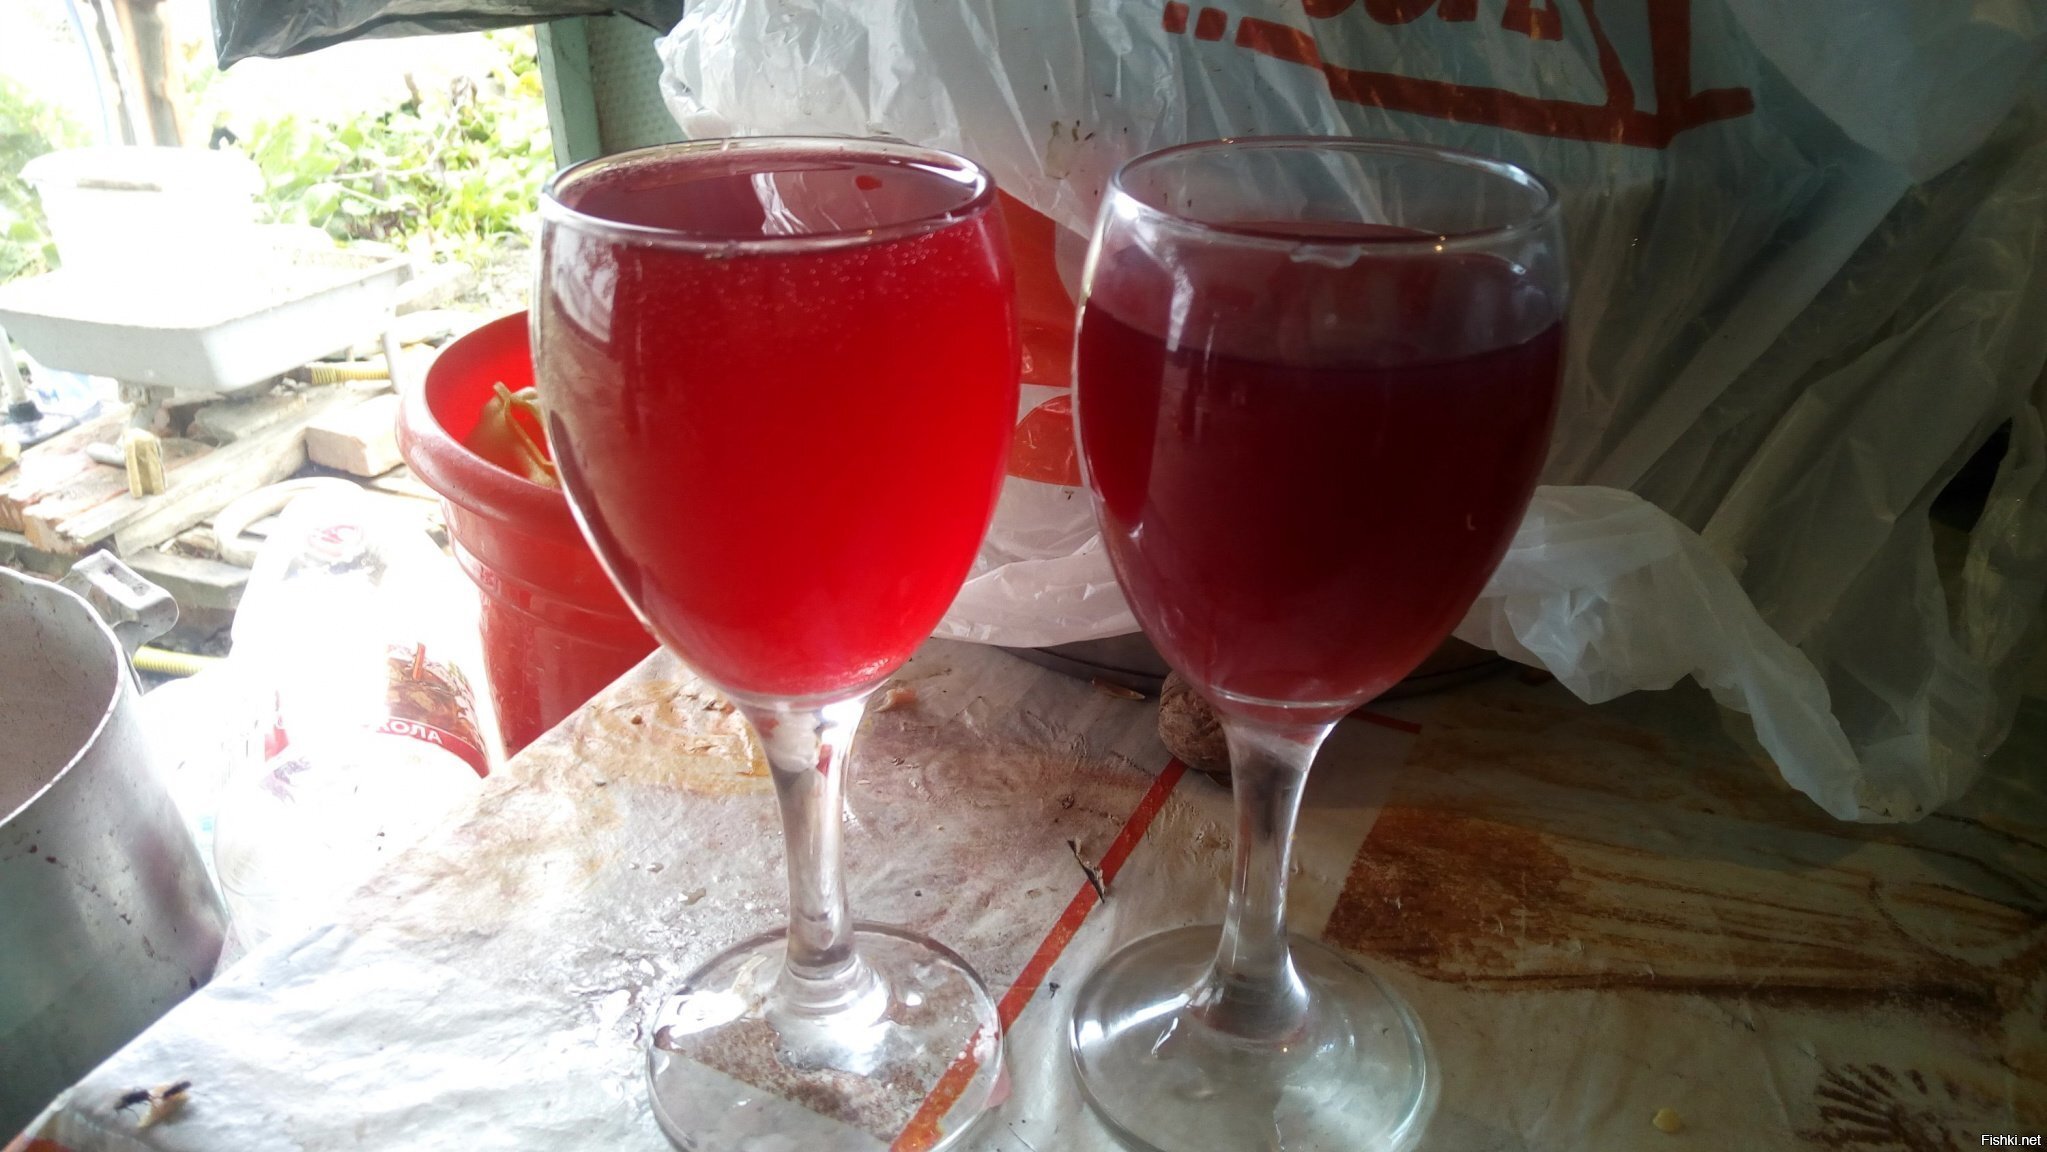 Два сорта молодого вина Боку и Изабелла, моего изготовления, еще на дображивании